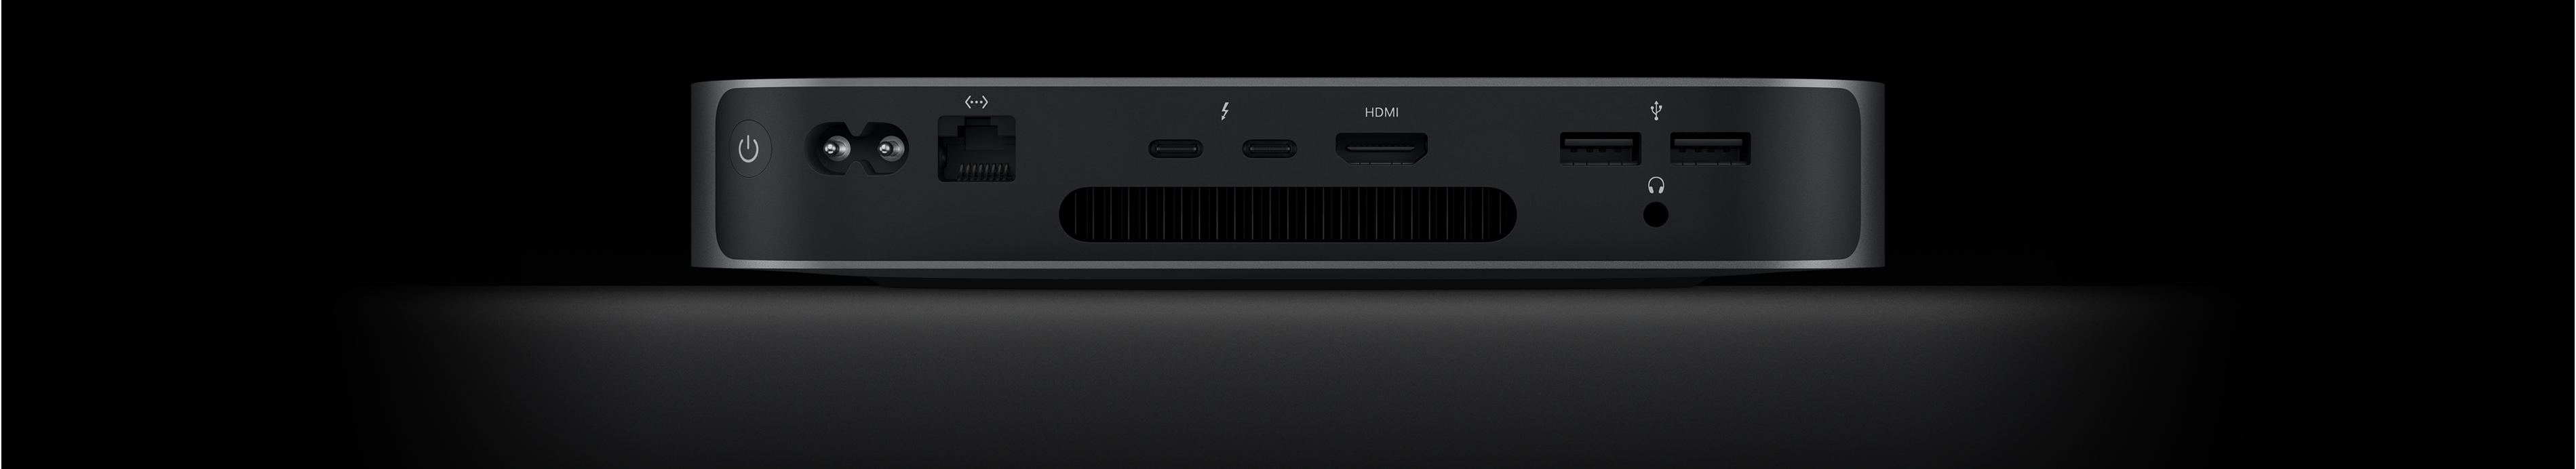 มุมมองด้านหลังของ Mac mini ซึ่งแสดงพอร์ต Thunderbolt 4 จำนวน 2 พอร์ต, พอร์ต HDMI, พอร์ต USB-A จำนวน 2 พอร์ต, ช่องต่อหูฟัง, พอร์ต Gigabit Ethernet, พอร์ตจ่ายไฟ และปุ่มเปิด/ปิด